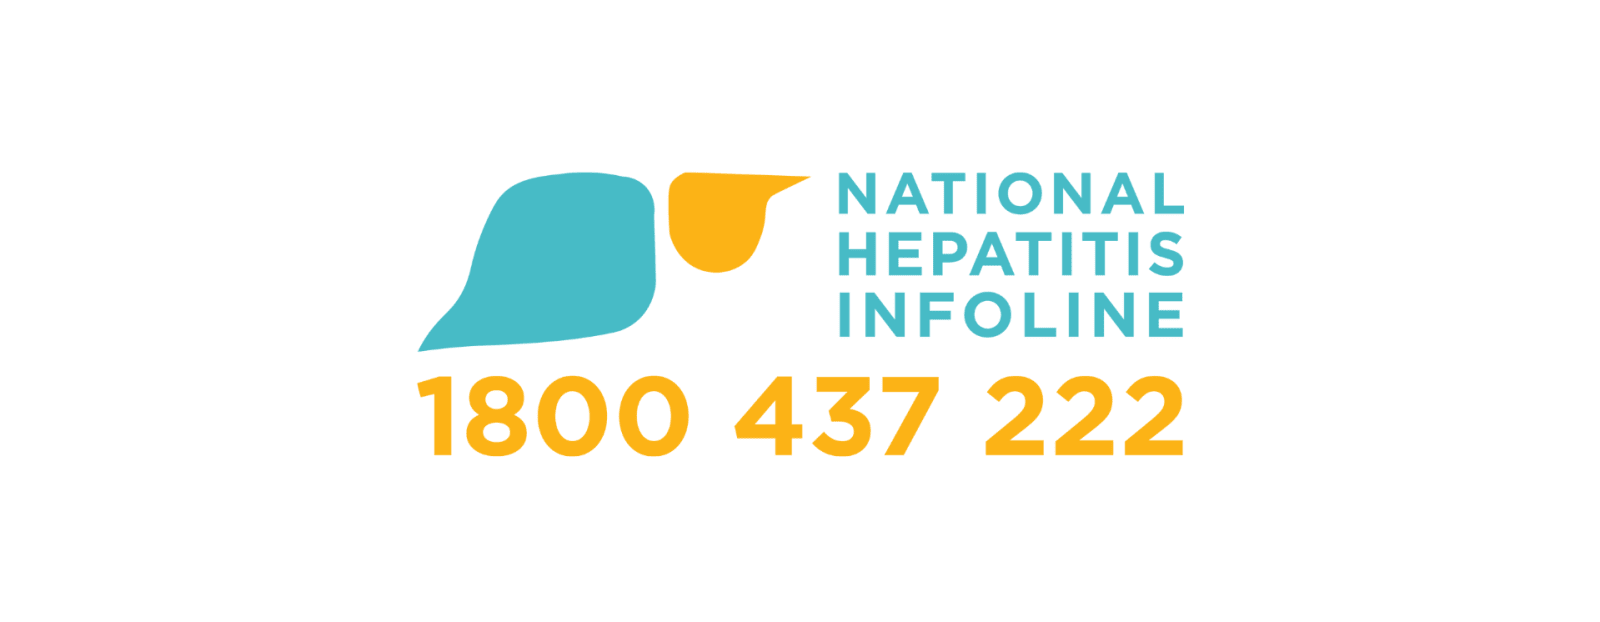 National Hepatitis Infoline